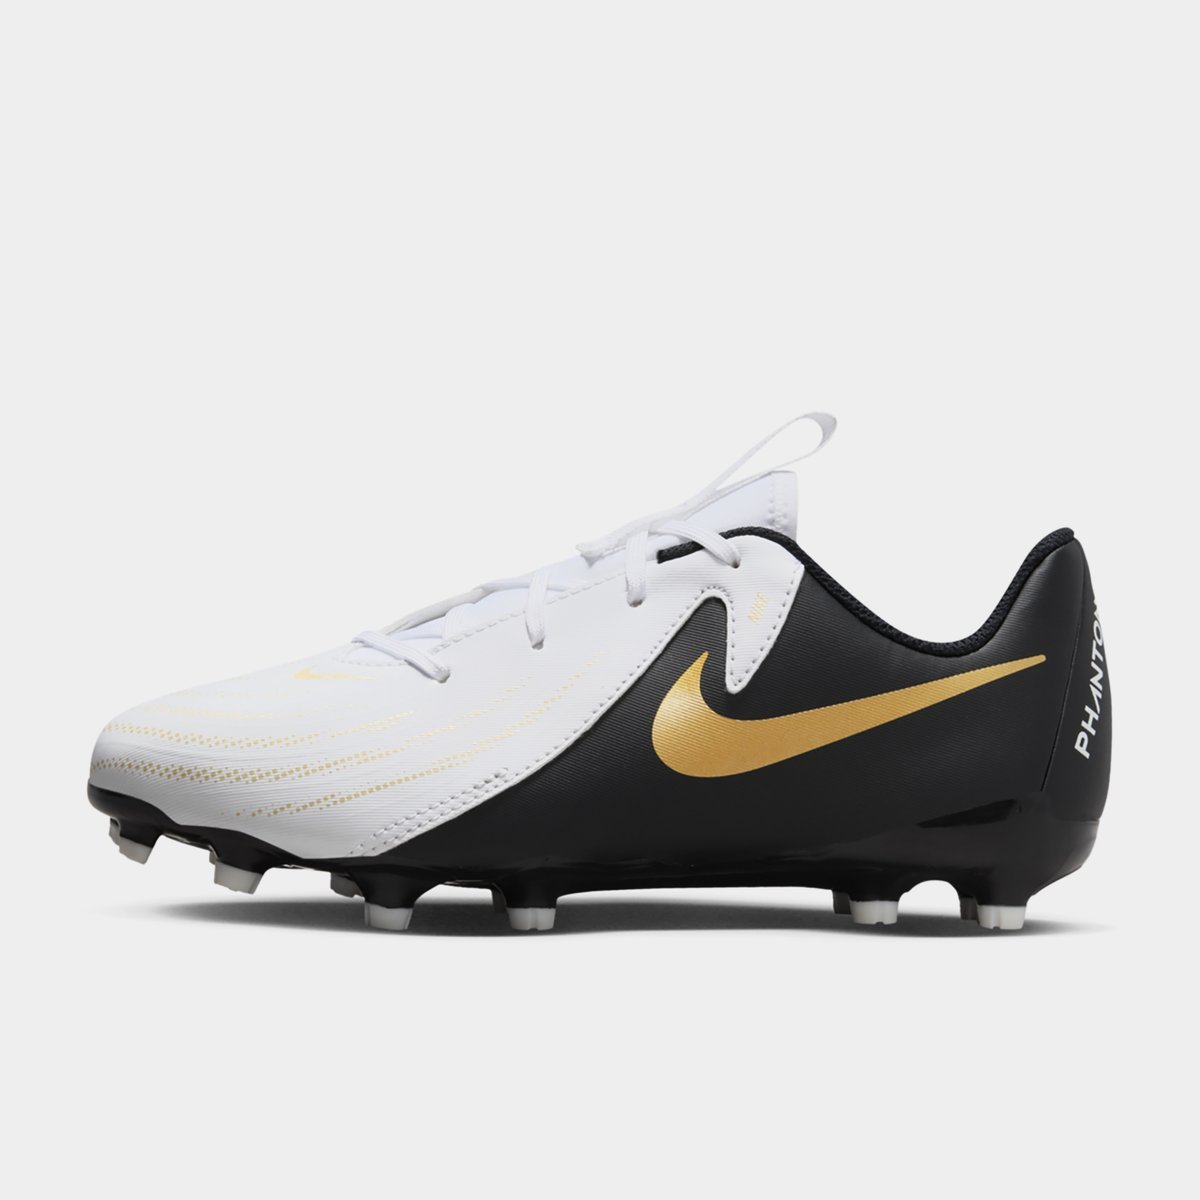 Nike Football Boots - Lovell Soccer